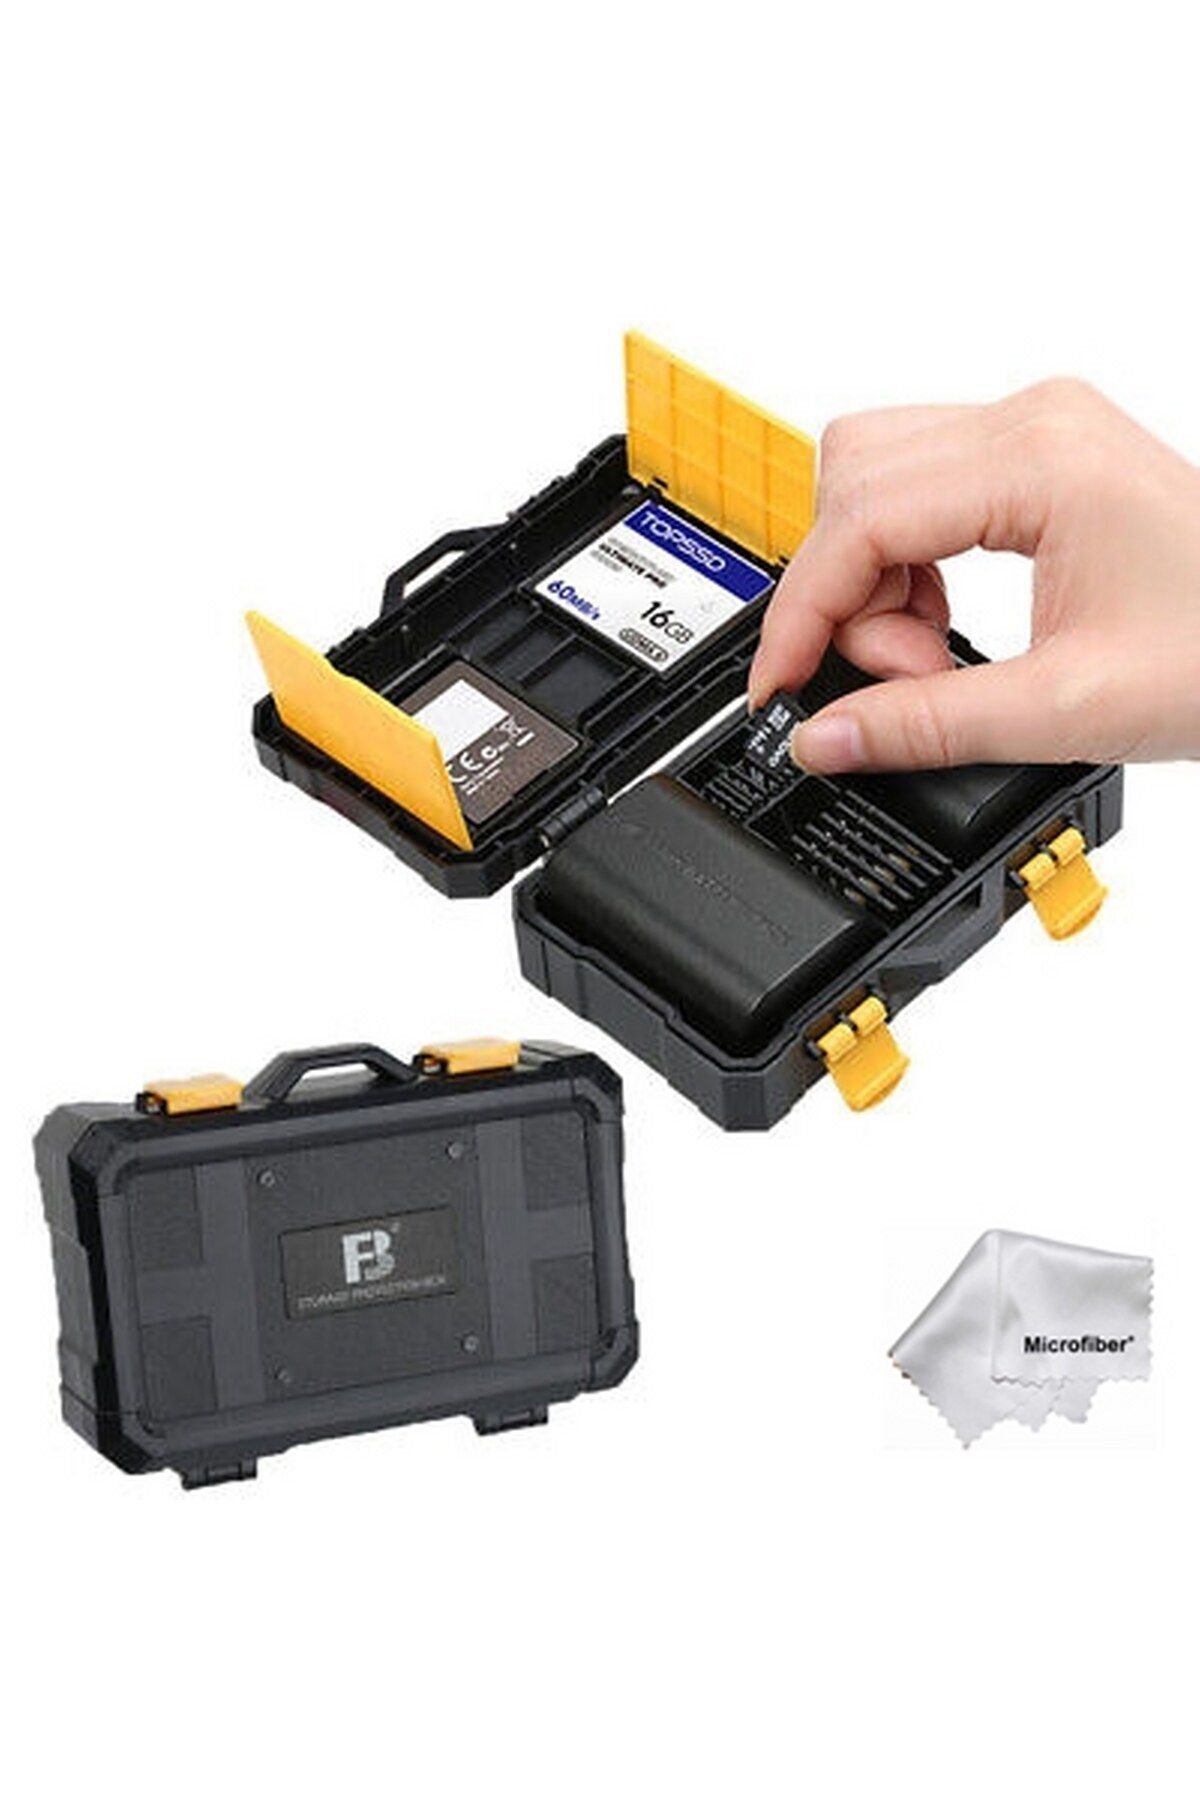 Tianya DSLR ve Aynasız için Batarya ve Hafıza Kartı Kutusu Card Box Canon Nikon Sony Fujifilm Olympus